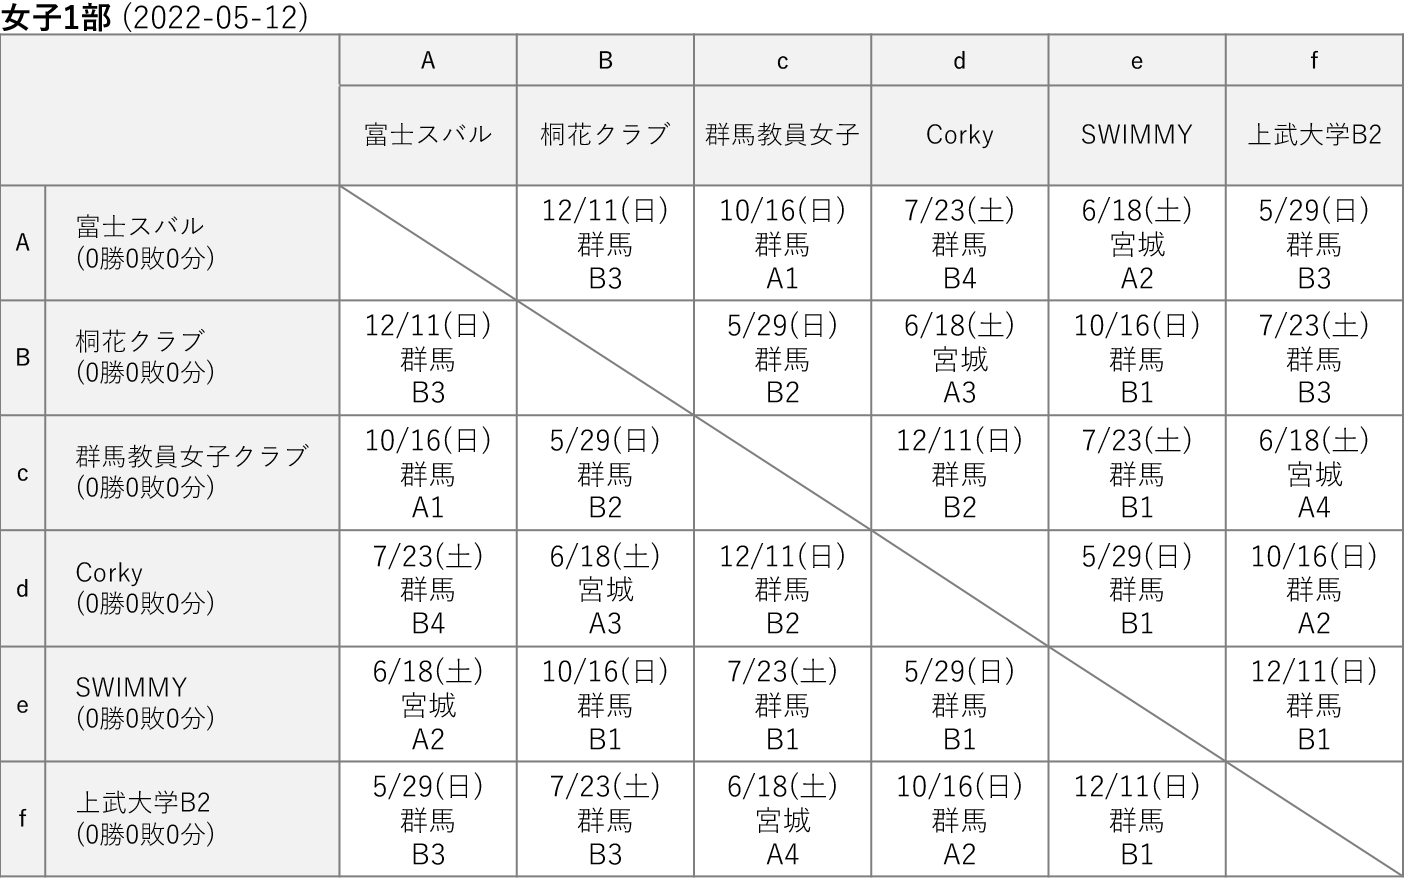 2022社会人リーグ 女子1部 星取り表(2022-05-12)